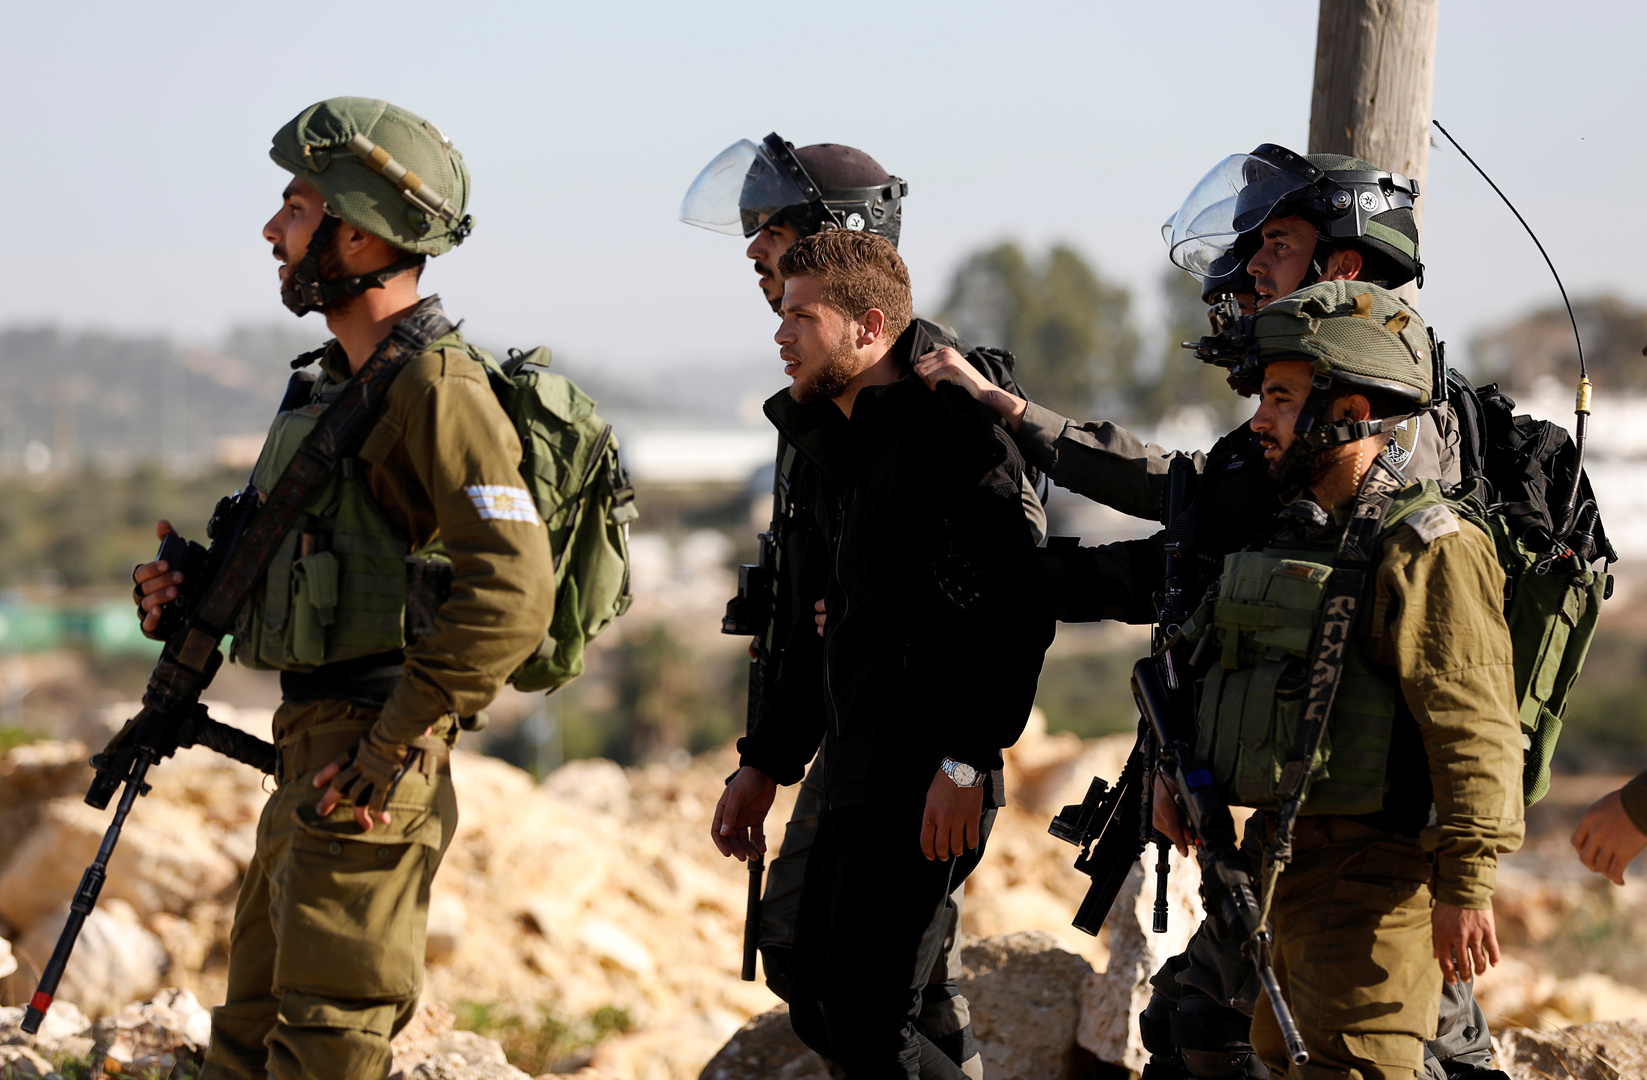 تقرير: 4400 معتقل فلسطيني في السجون الإسرائيلية منهم 170 طفلا